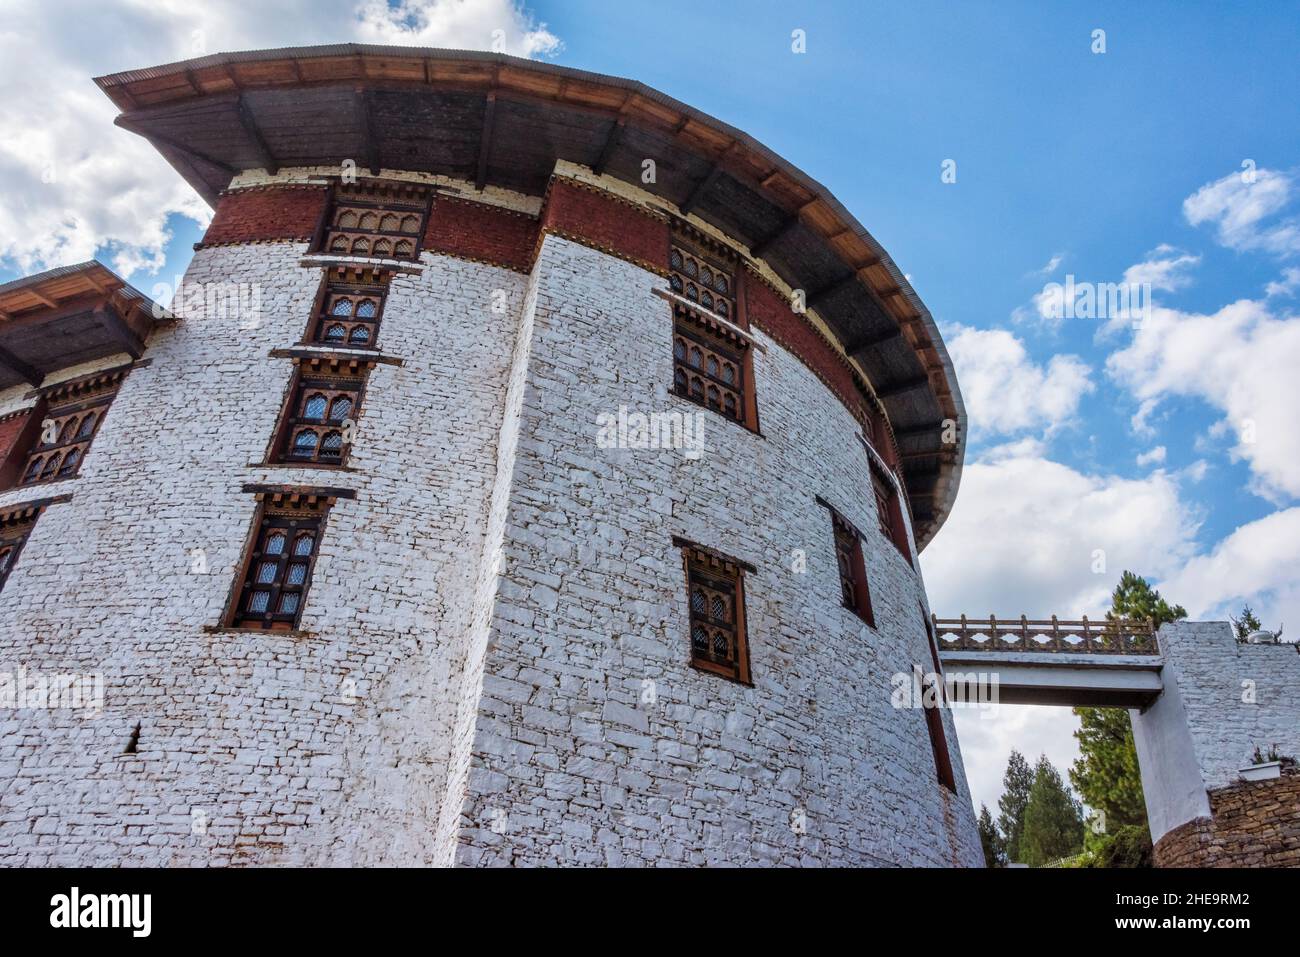 Nationalmuseum, Paro, Bhutan Stockfoto